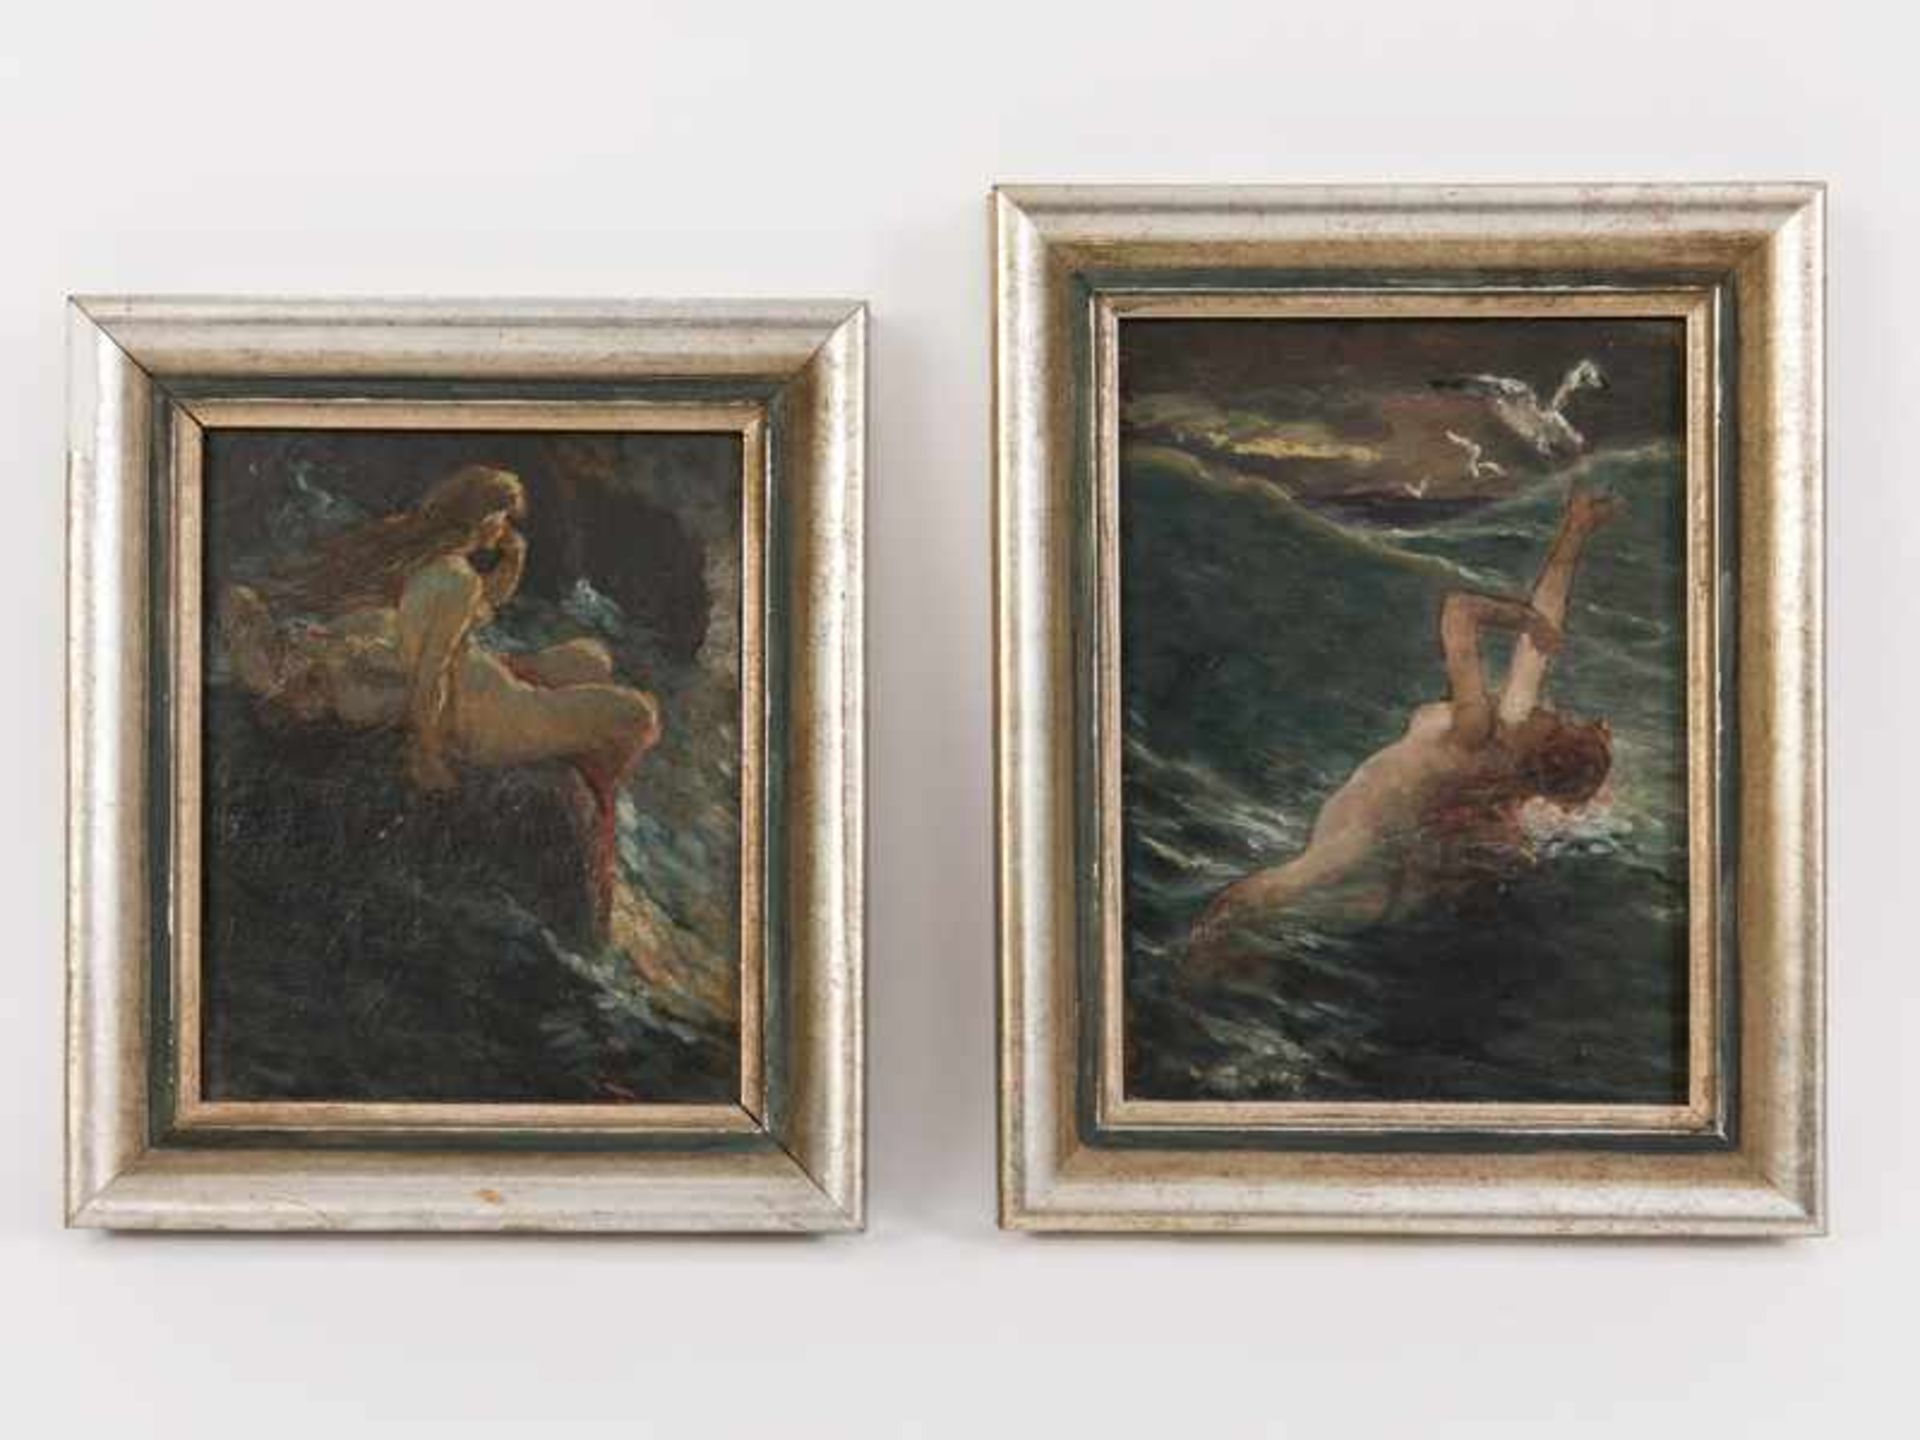 Wachsmuth, Maximilian (1859 - 1912). Öl auf Karton; Paar Skizzen "Weibliche Akte am Meer bzw. in der